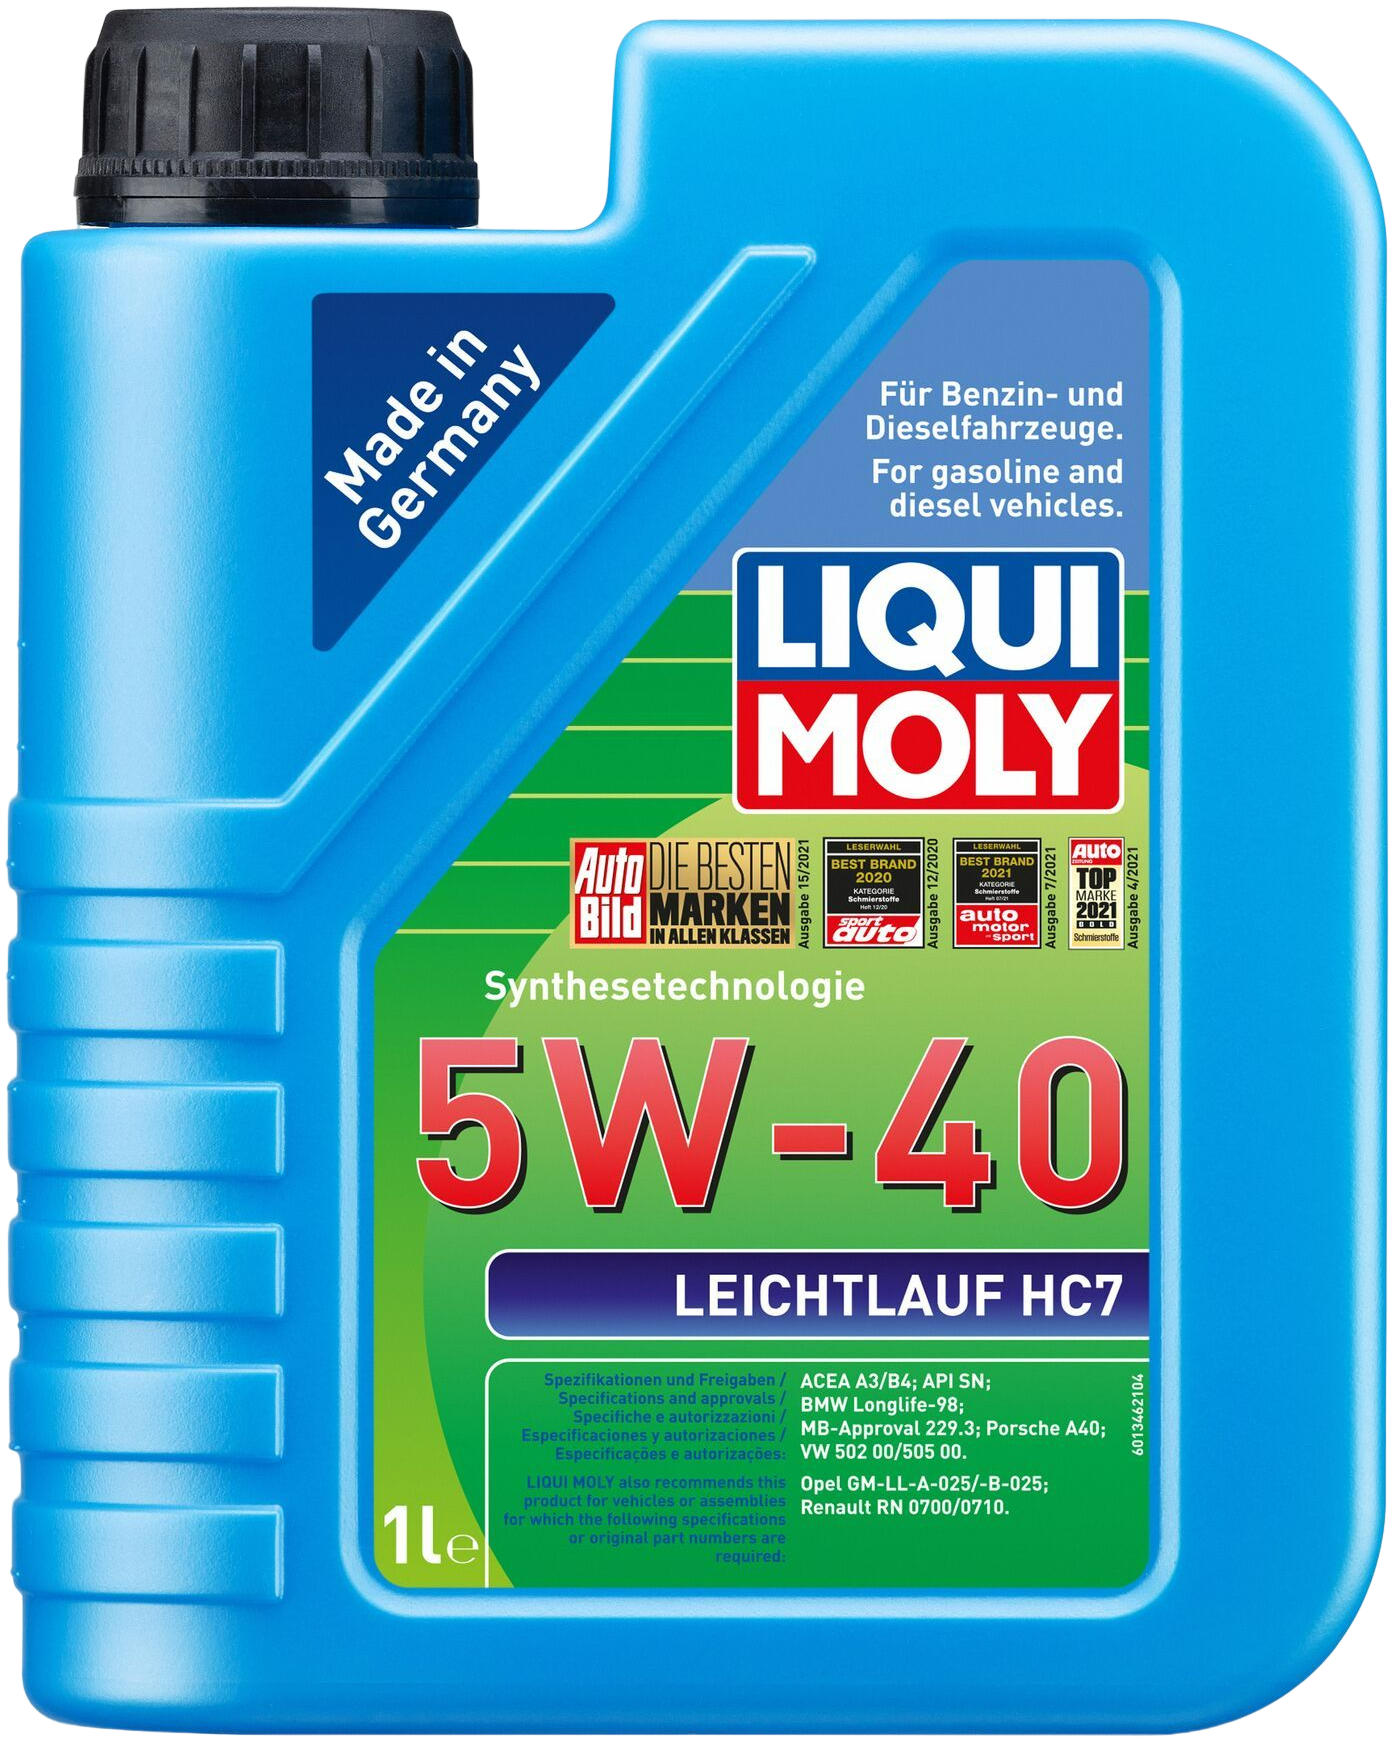 Liqui Moly Leichtlauf HC7 5W-40, 1 lt